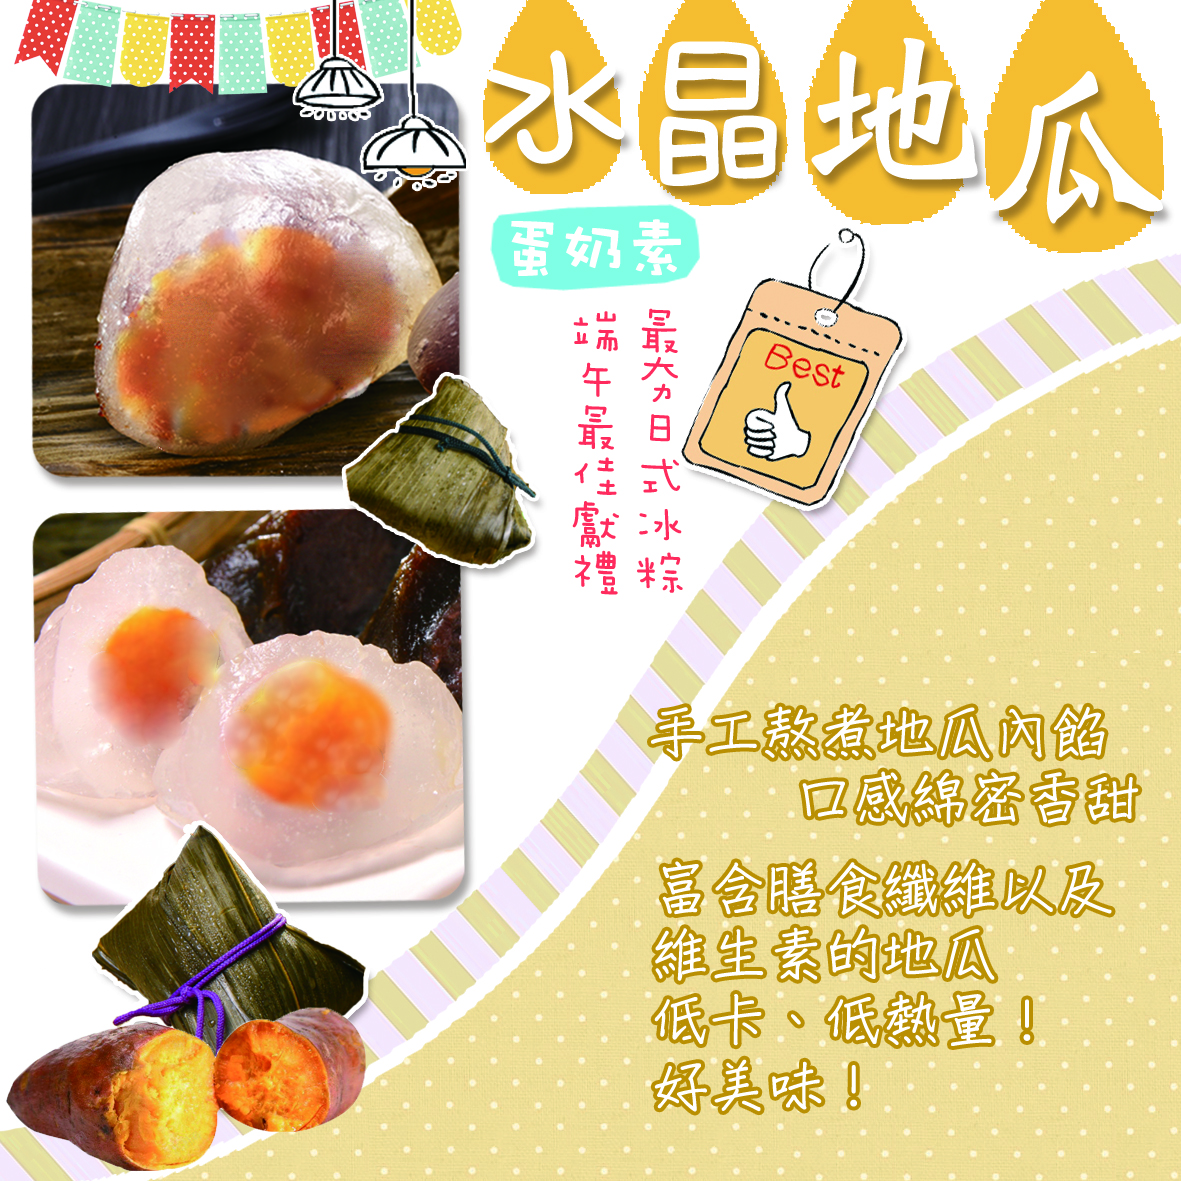  【豐味香】招財進寶冰粽禮盒(8顆/盒) 5款任選 保冰袋裝禮盒